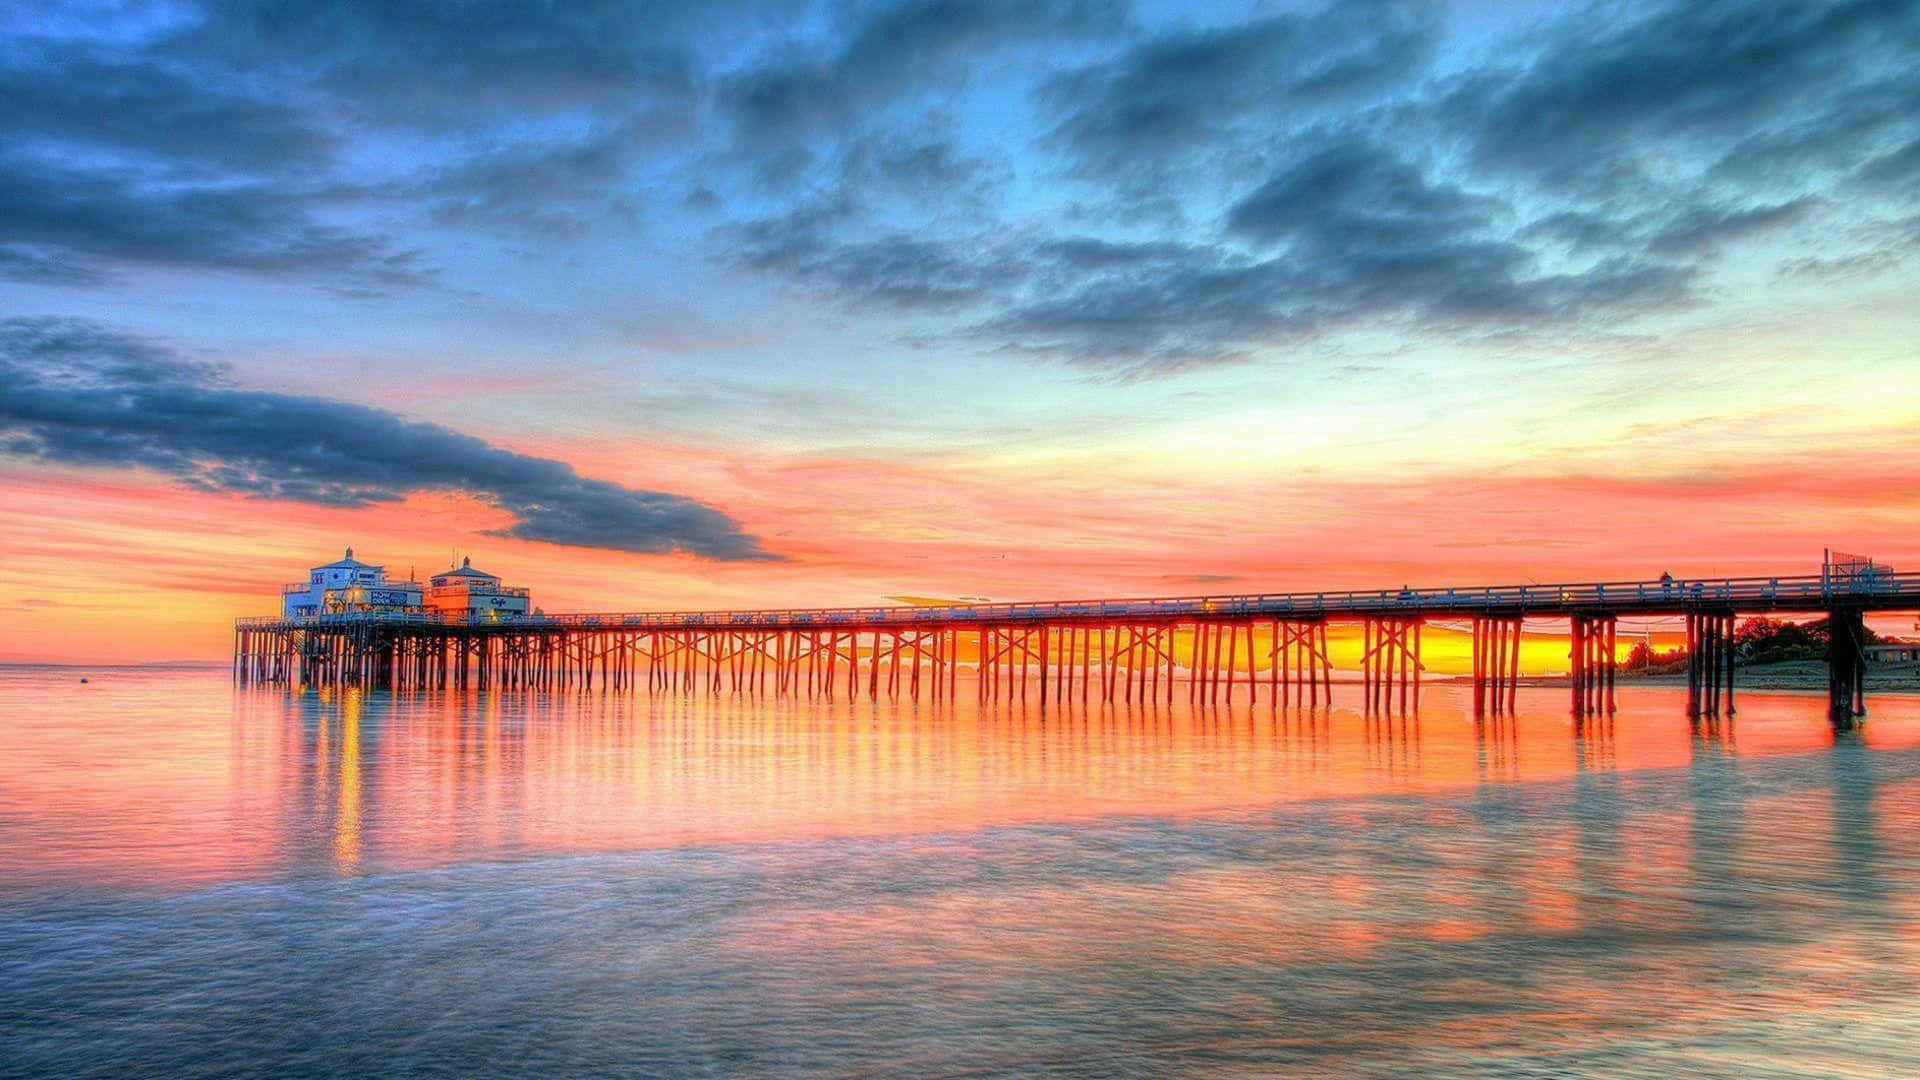 1440p Malibu Pier Sunset Background